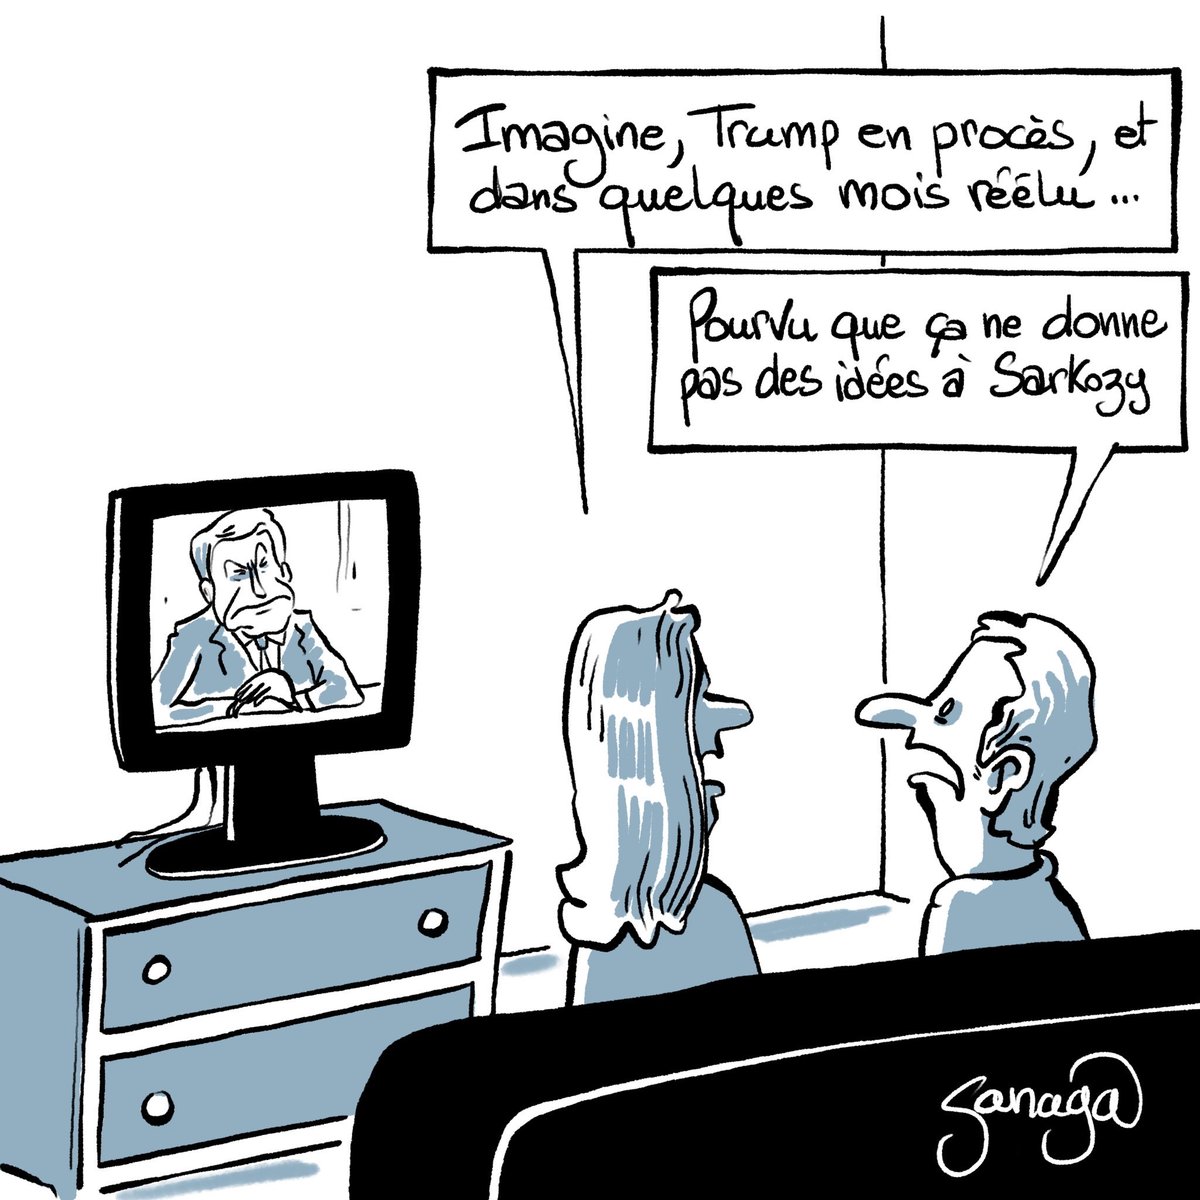 Le #DessinDePresse de Sanaga : Le procès de Trump
Retrouvez tous les dessins de Sanaga : blagues-et-dessins.com
#DessinDeSanaga #ActuDeSanaga #Sanaga #Humour #ÉtatsUnis #Trump #DonaldTrump #Sarkozy #NicolasSarkozy #Procès #Réélection